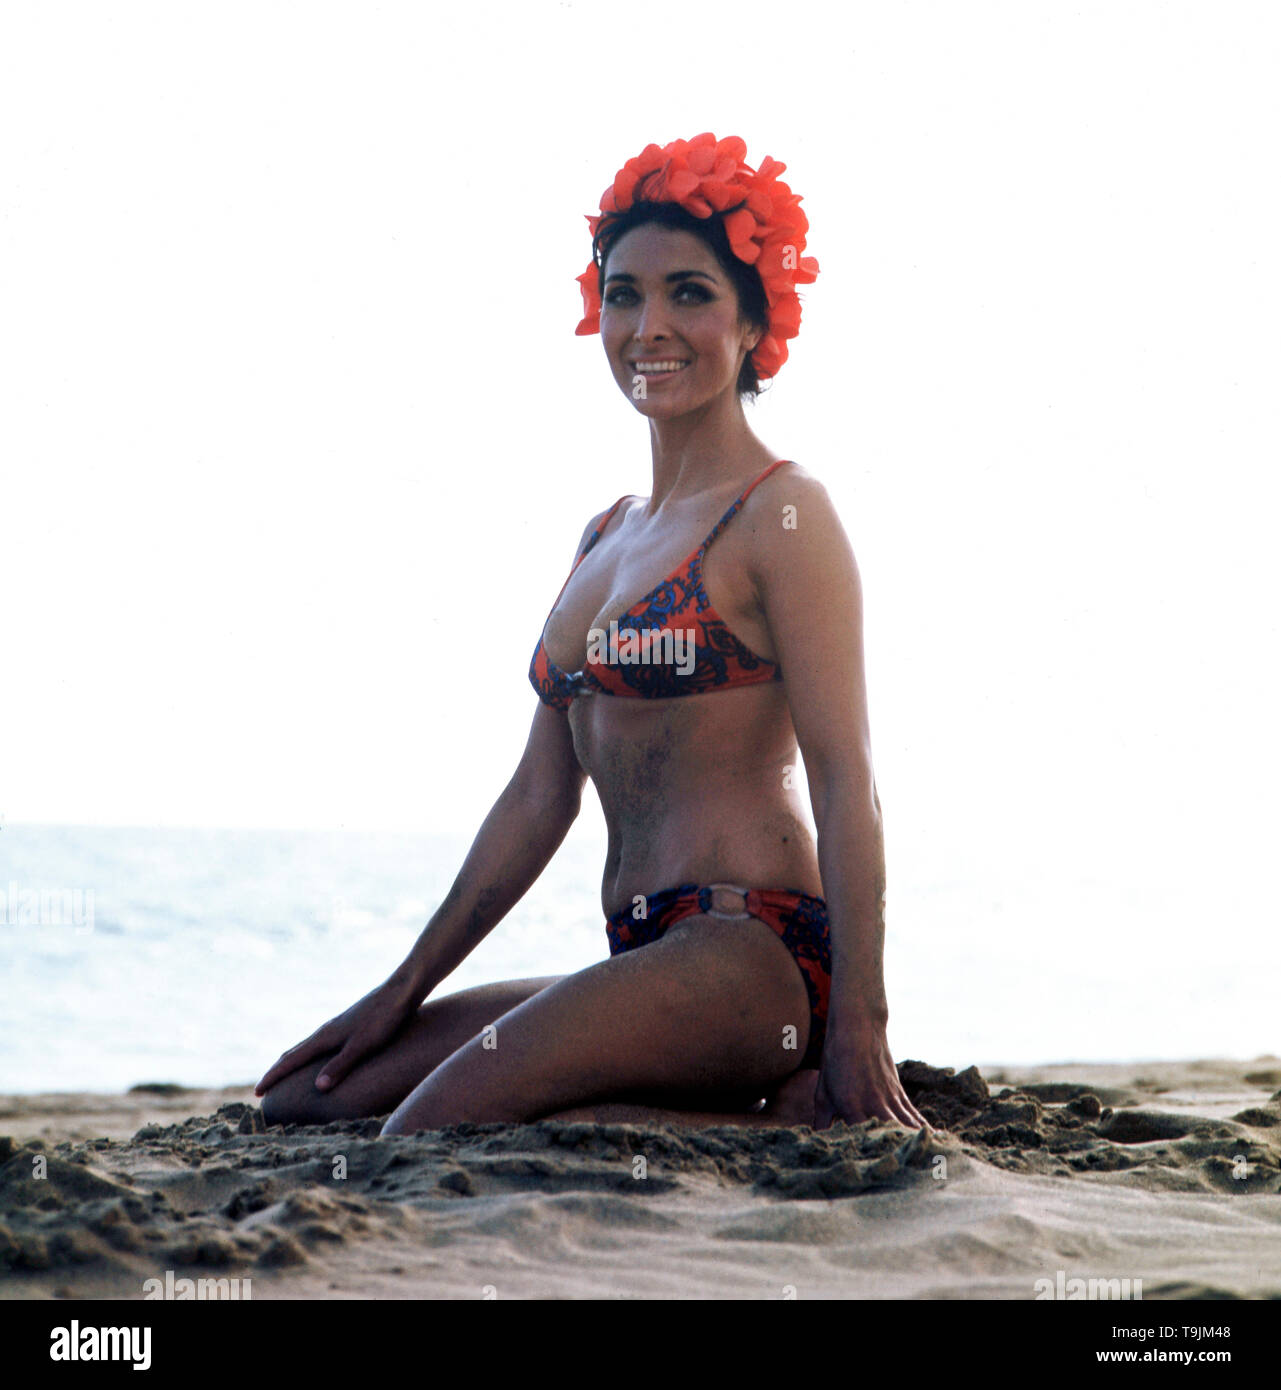 Die deutsche Schauspielerin und Sängerin Dunja Rajter im Urlaub posiert im  Bikini am Strand mit einer ausgefallenden Badehaube, ca. 1975. The German  actress and singer Dunja Rajter on vacation poses in a